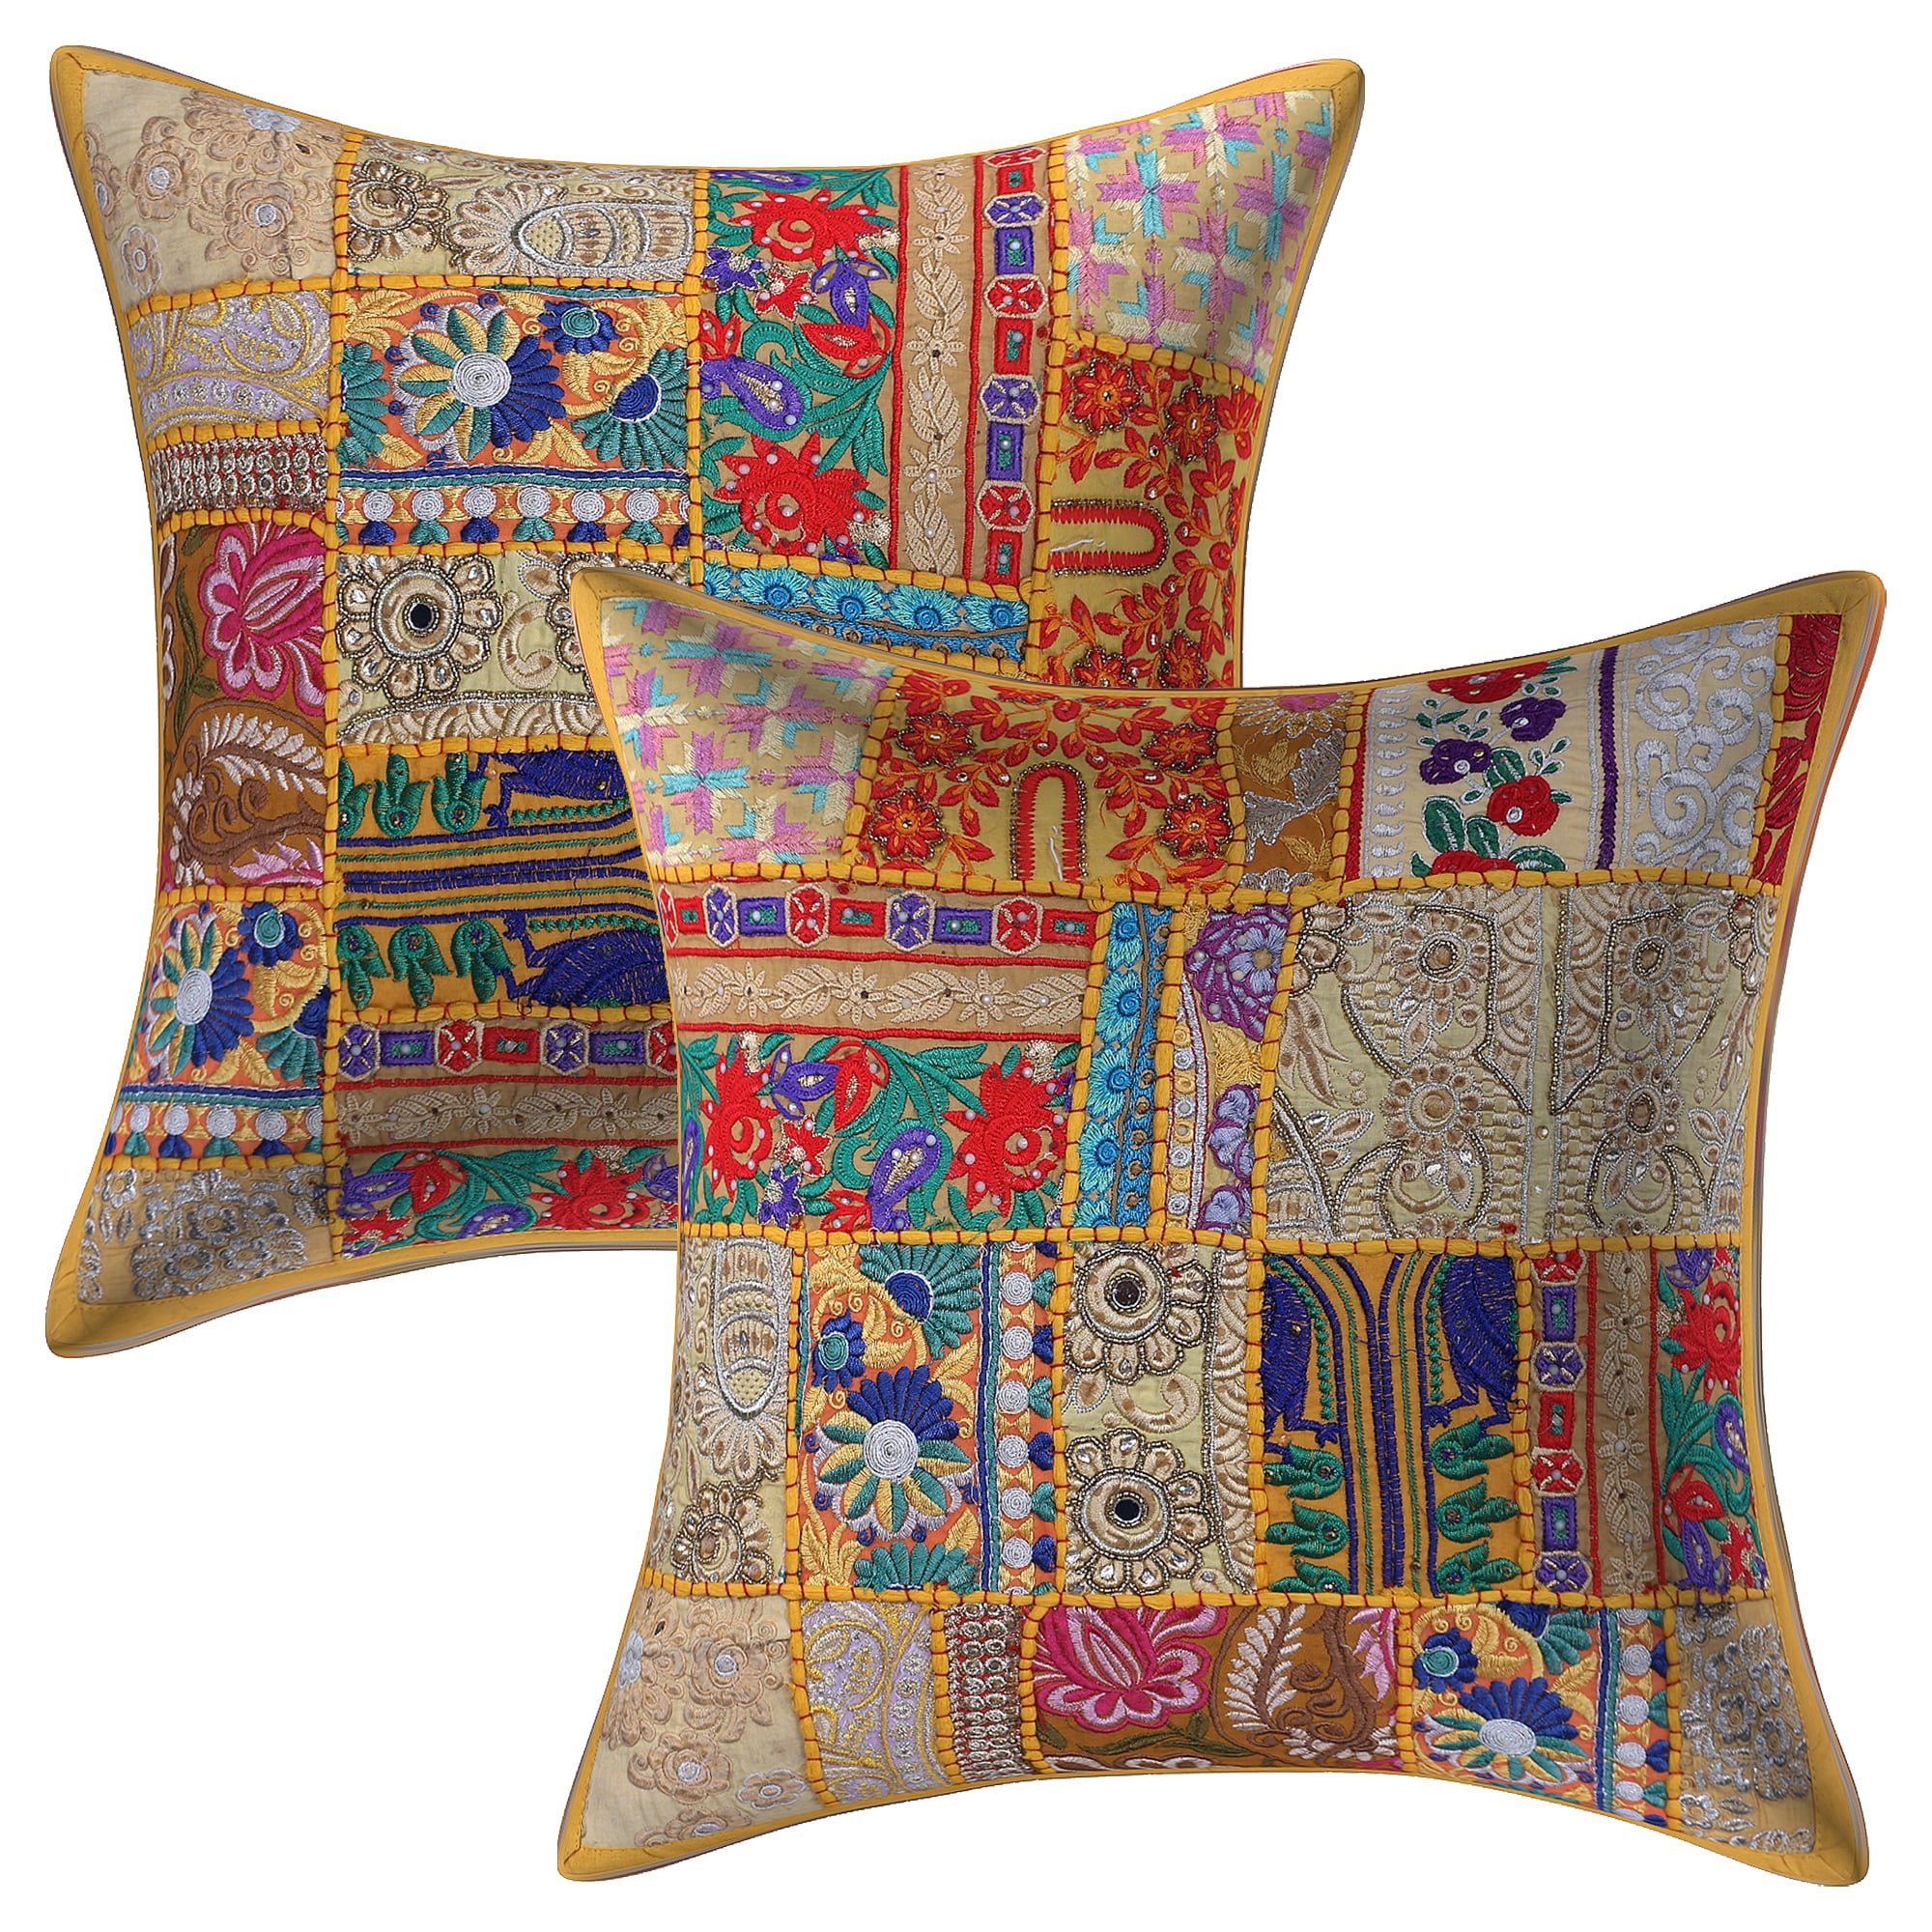 Yellow 20x20 Square Cotton Sari Silk Decorative Throw Pillow